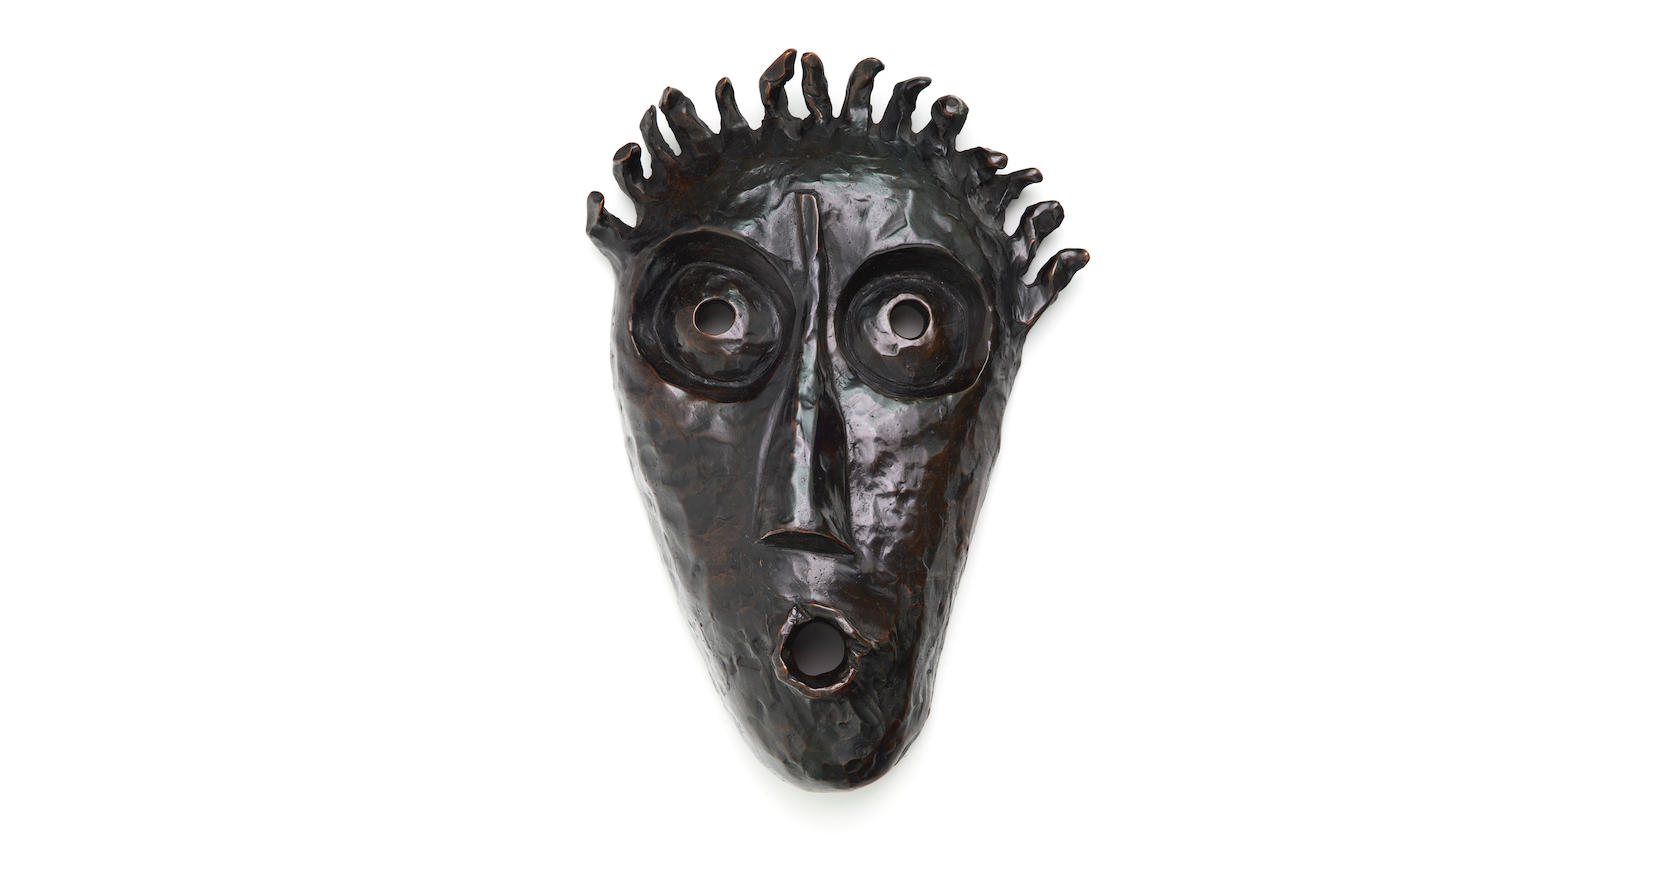 elizabeth garouste - elisabeth garouste - garouste bonetti - masque en bronze - sculpture - bronze- garouste bonetti